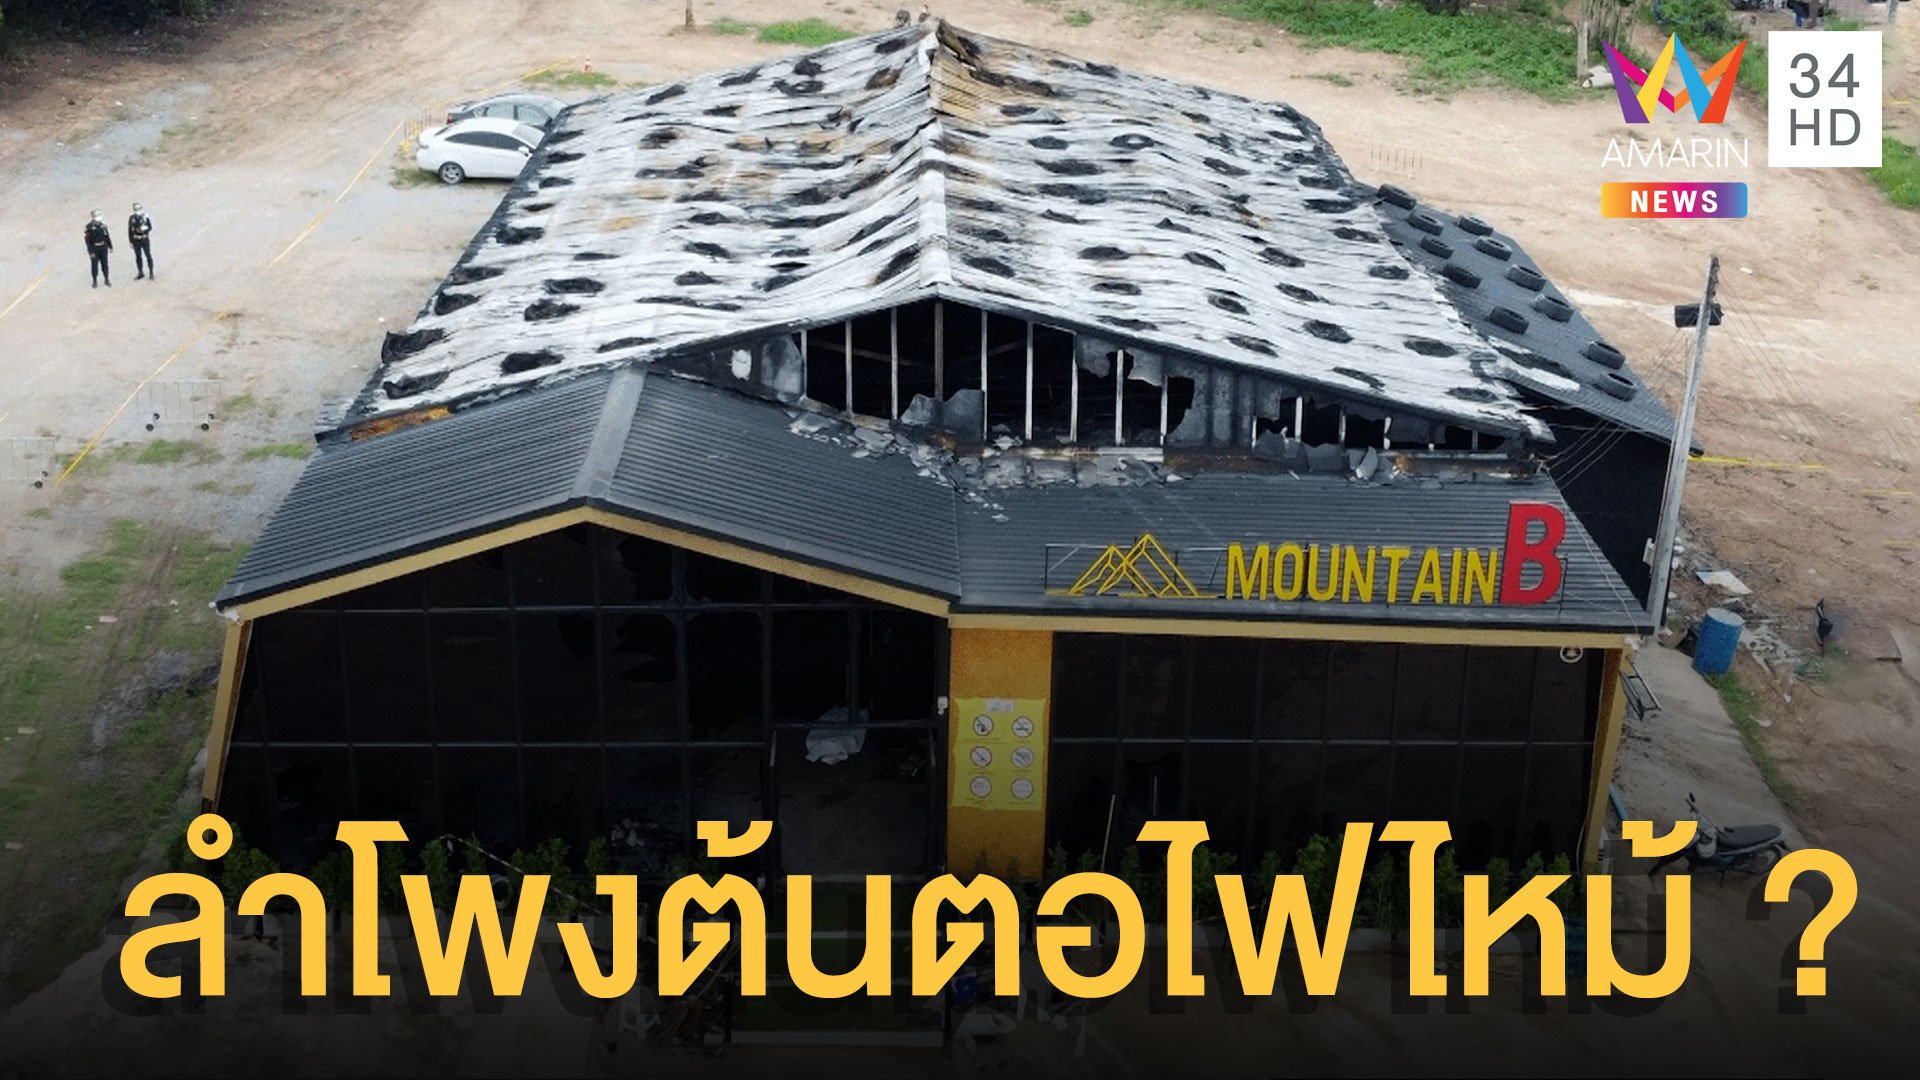 เปิดต้นตอ "MOUNTAIN B" ไฟไหม้ผับชลบุรี โศกนาฏกรรมเศร้าดับ 14 ศพ | ข่าวอรุณอมรินทร์ | 6 ส.ค. 65 | AMARIN TVHD34